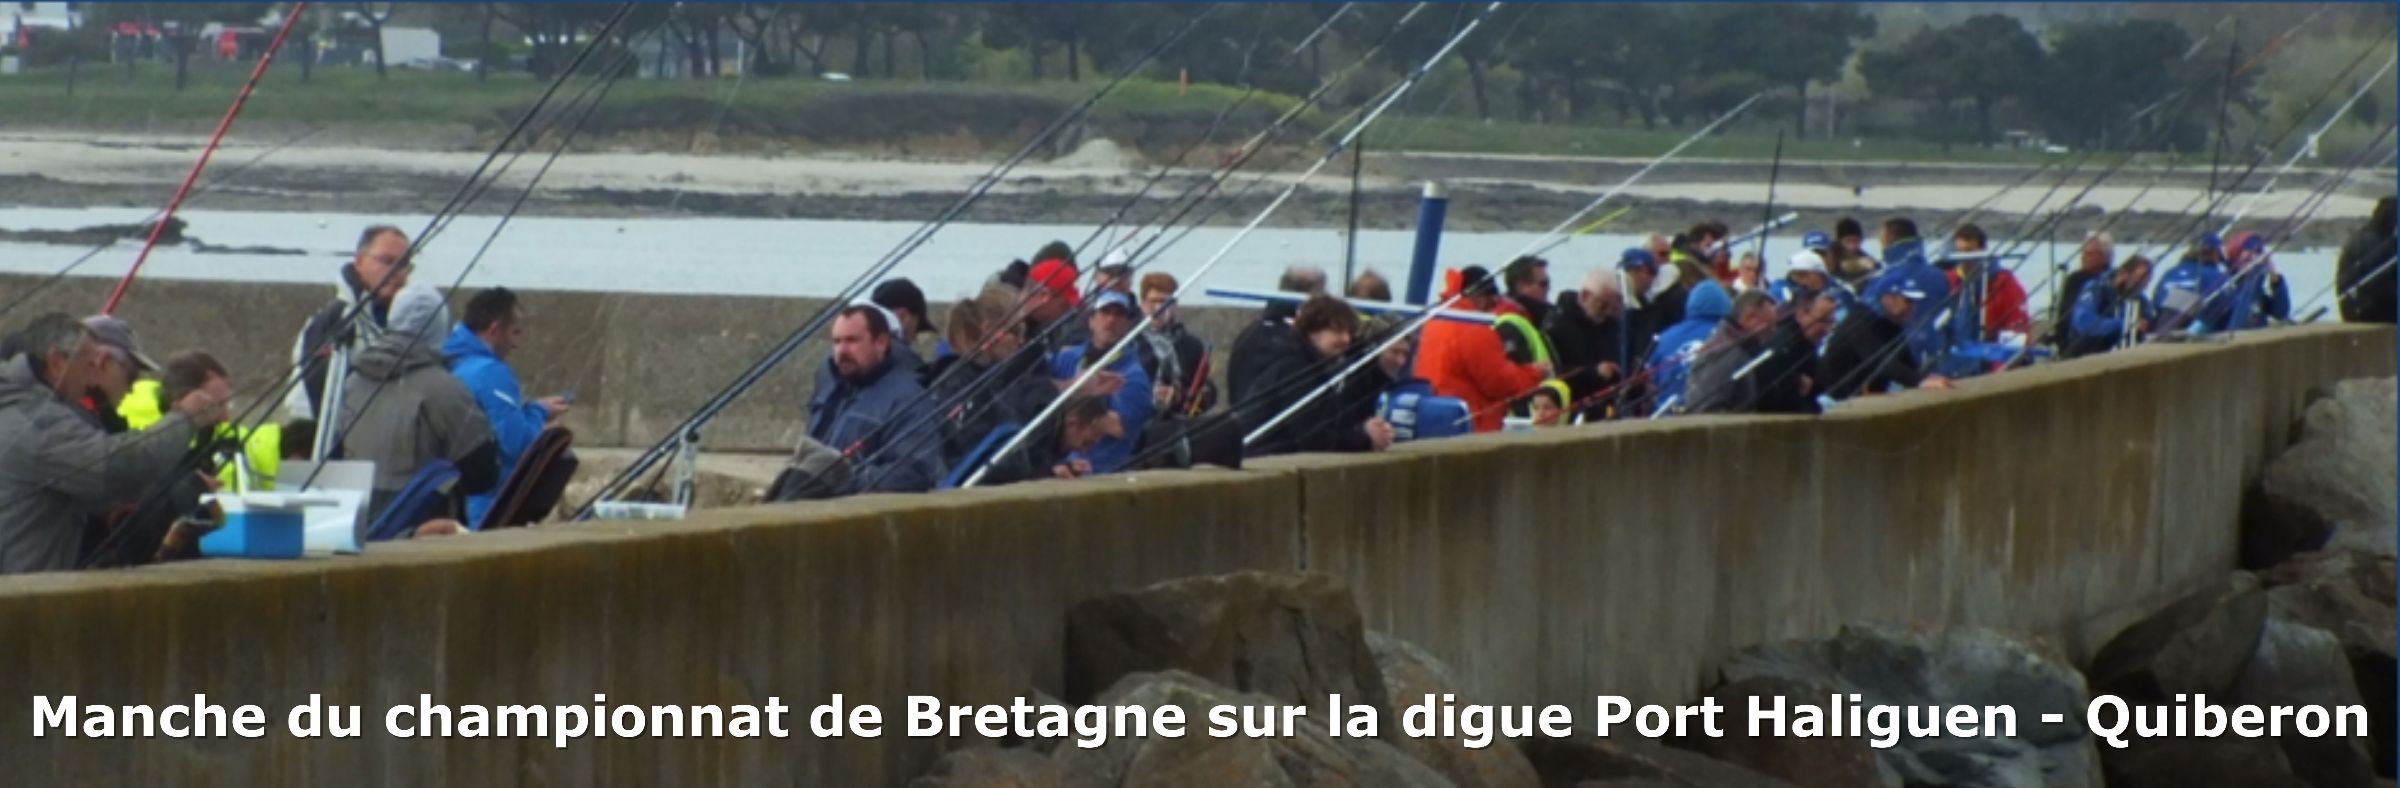 Manche du championnat de Bretagne sur la digue Port Haliguen - Quiberon﻿